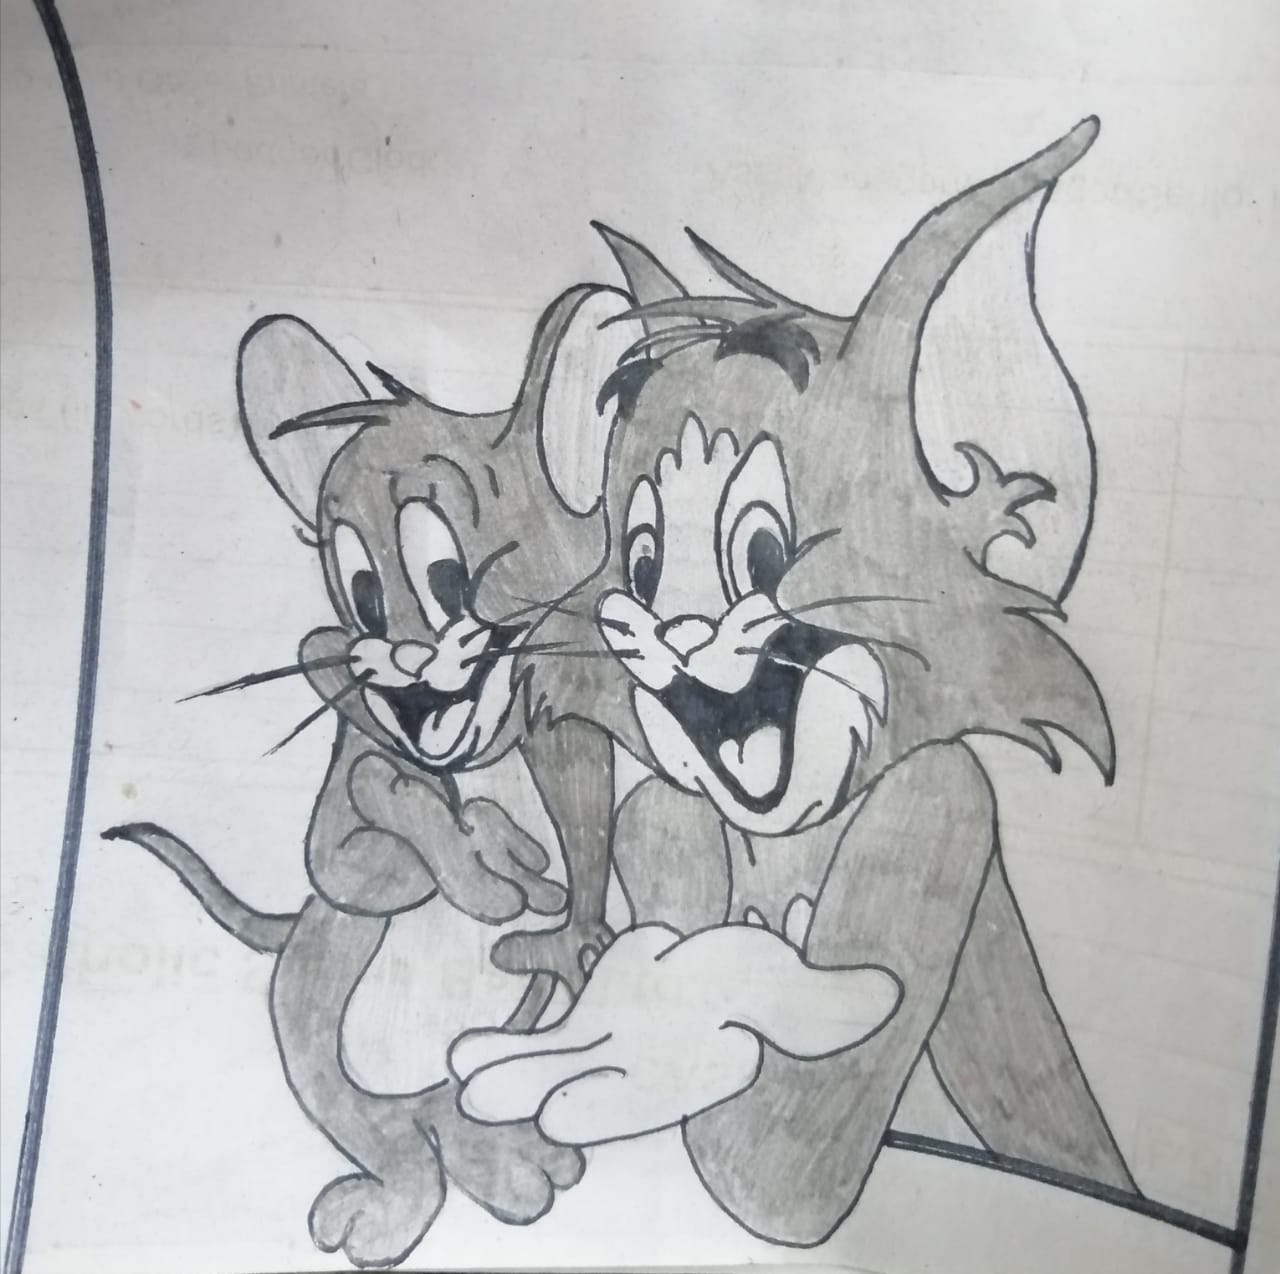 Tom And Jerry - GranNino